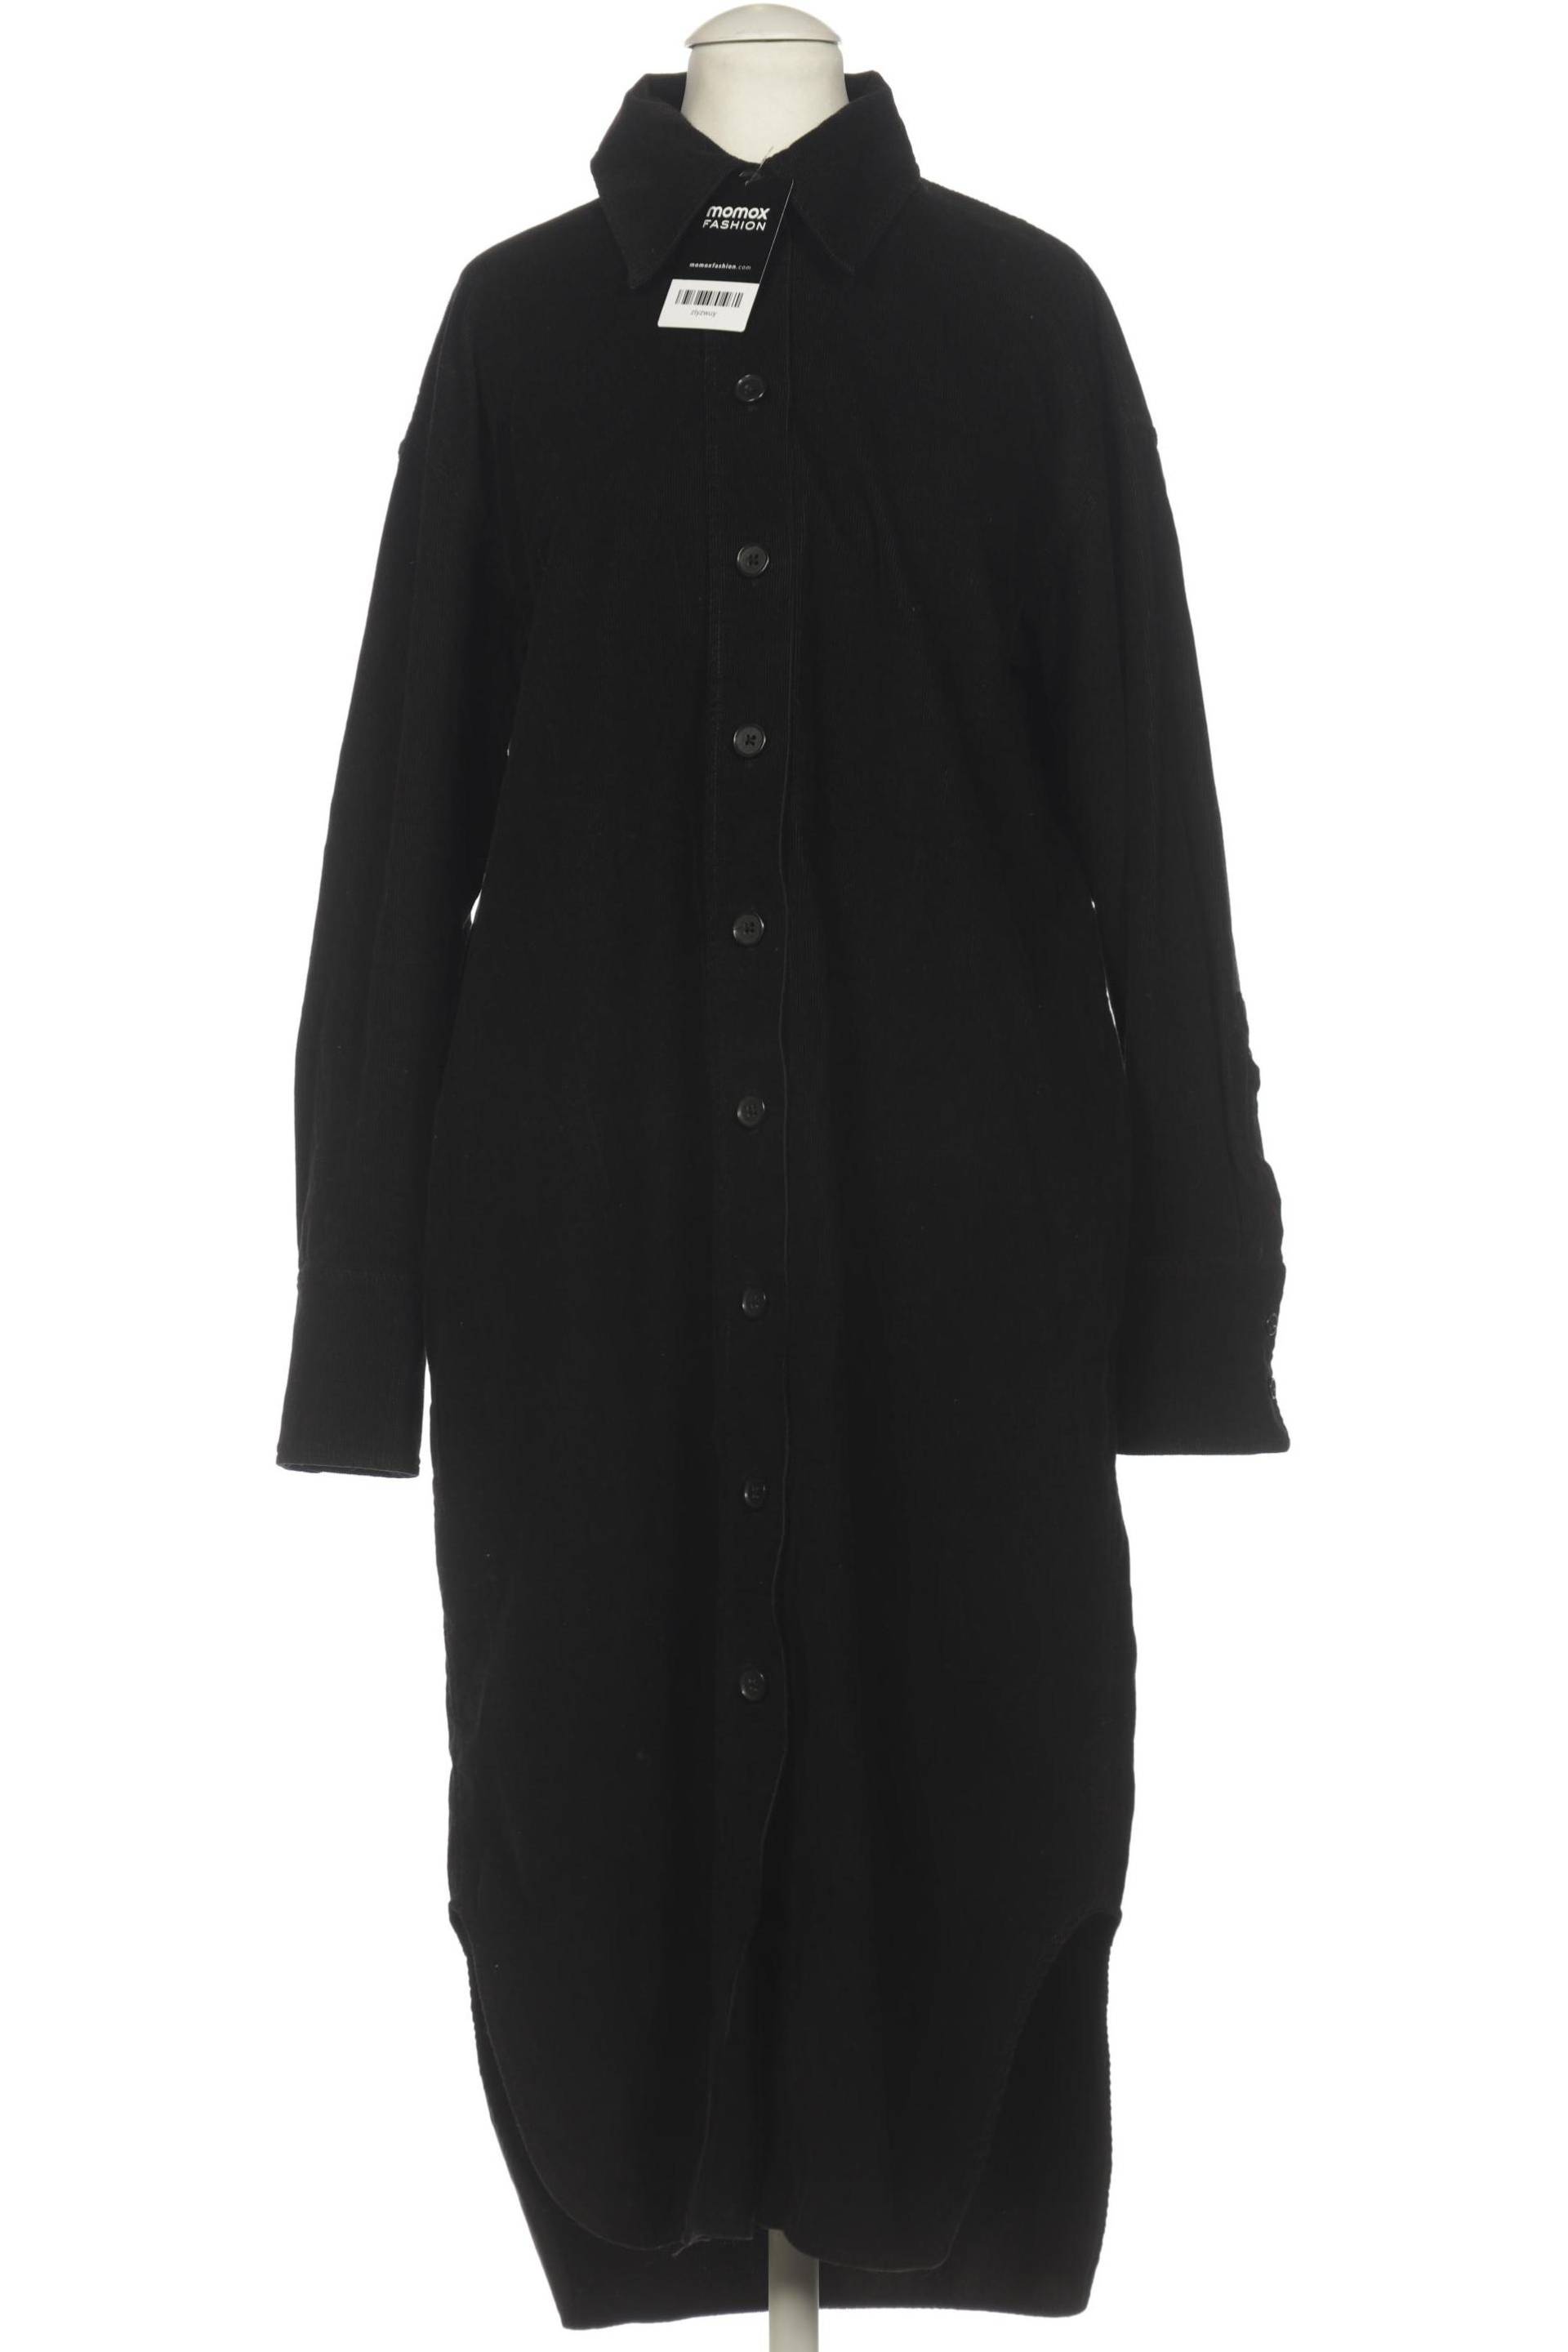 COS Damen Kleid, schwarz, Gr. 32 von COS